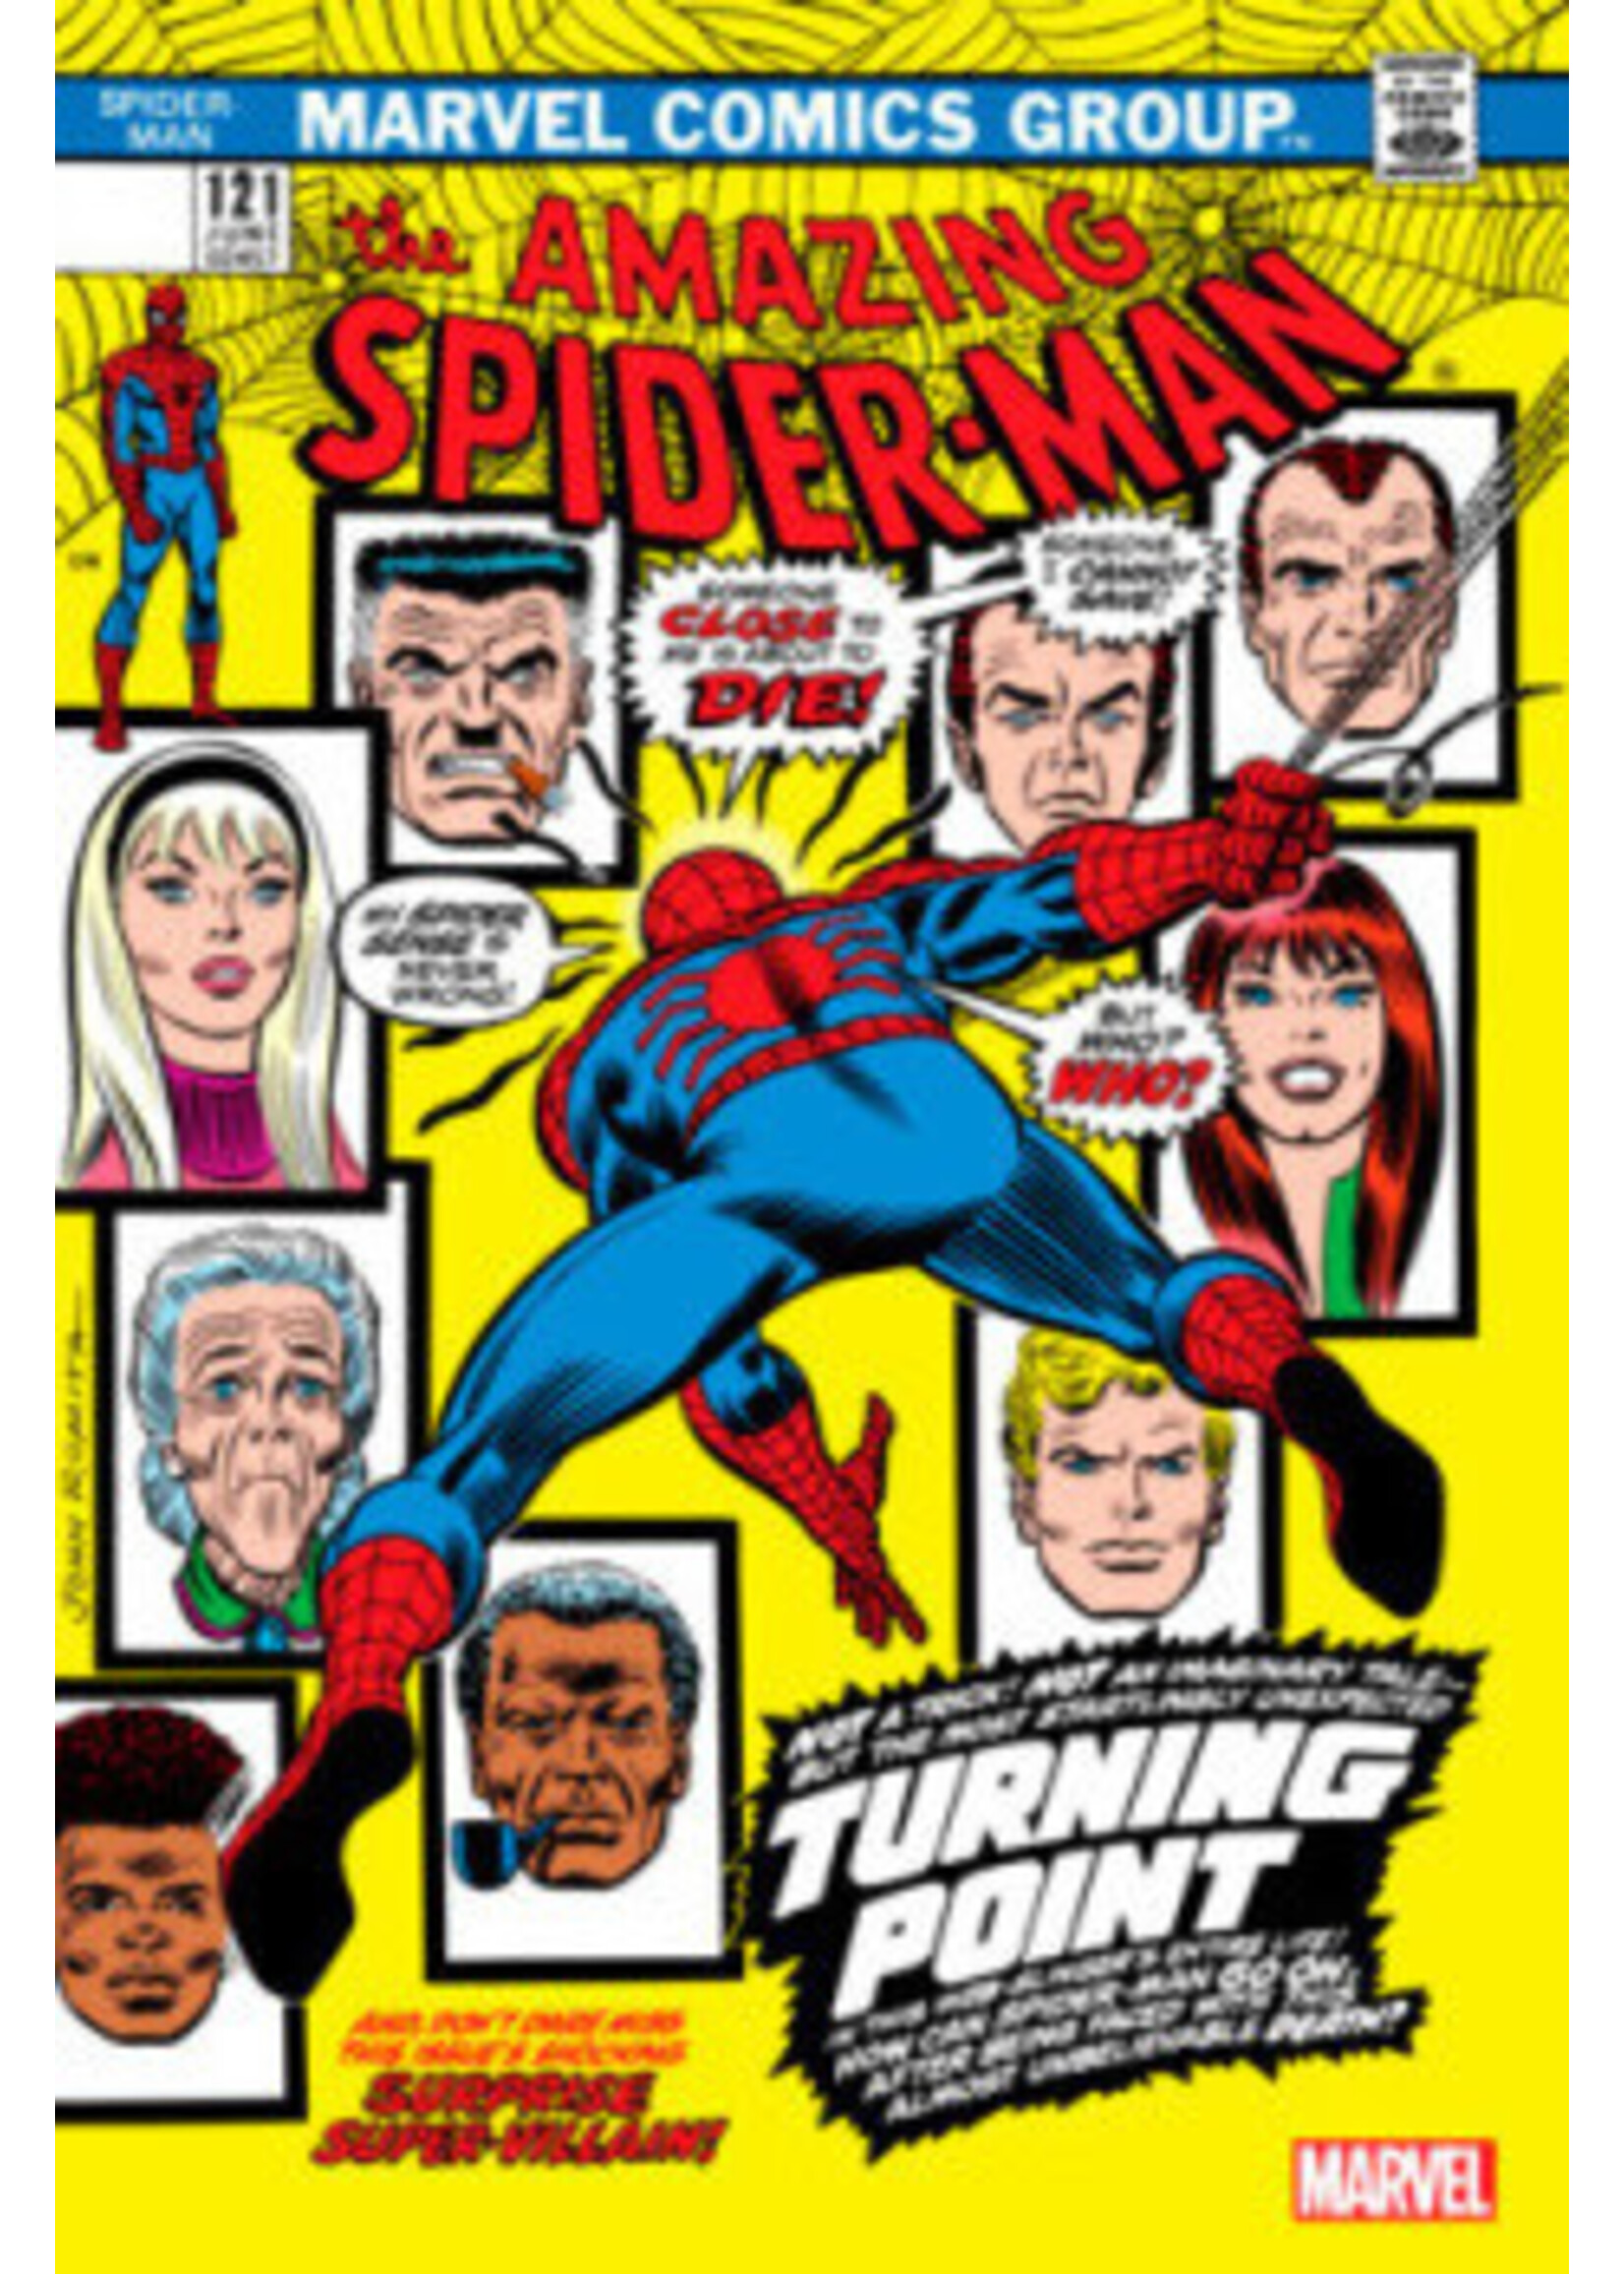 MARVEL COMICS AMAZING SPIDER-MAN #121 FACSIMILE EDITION